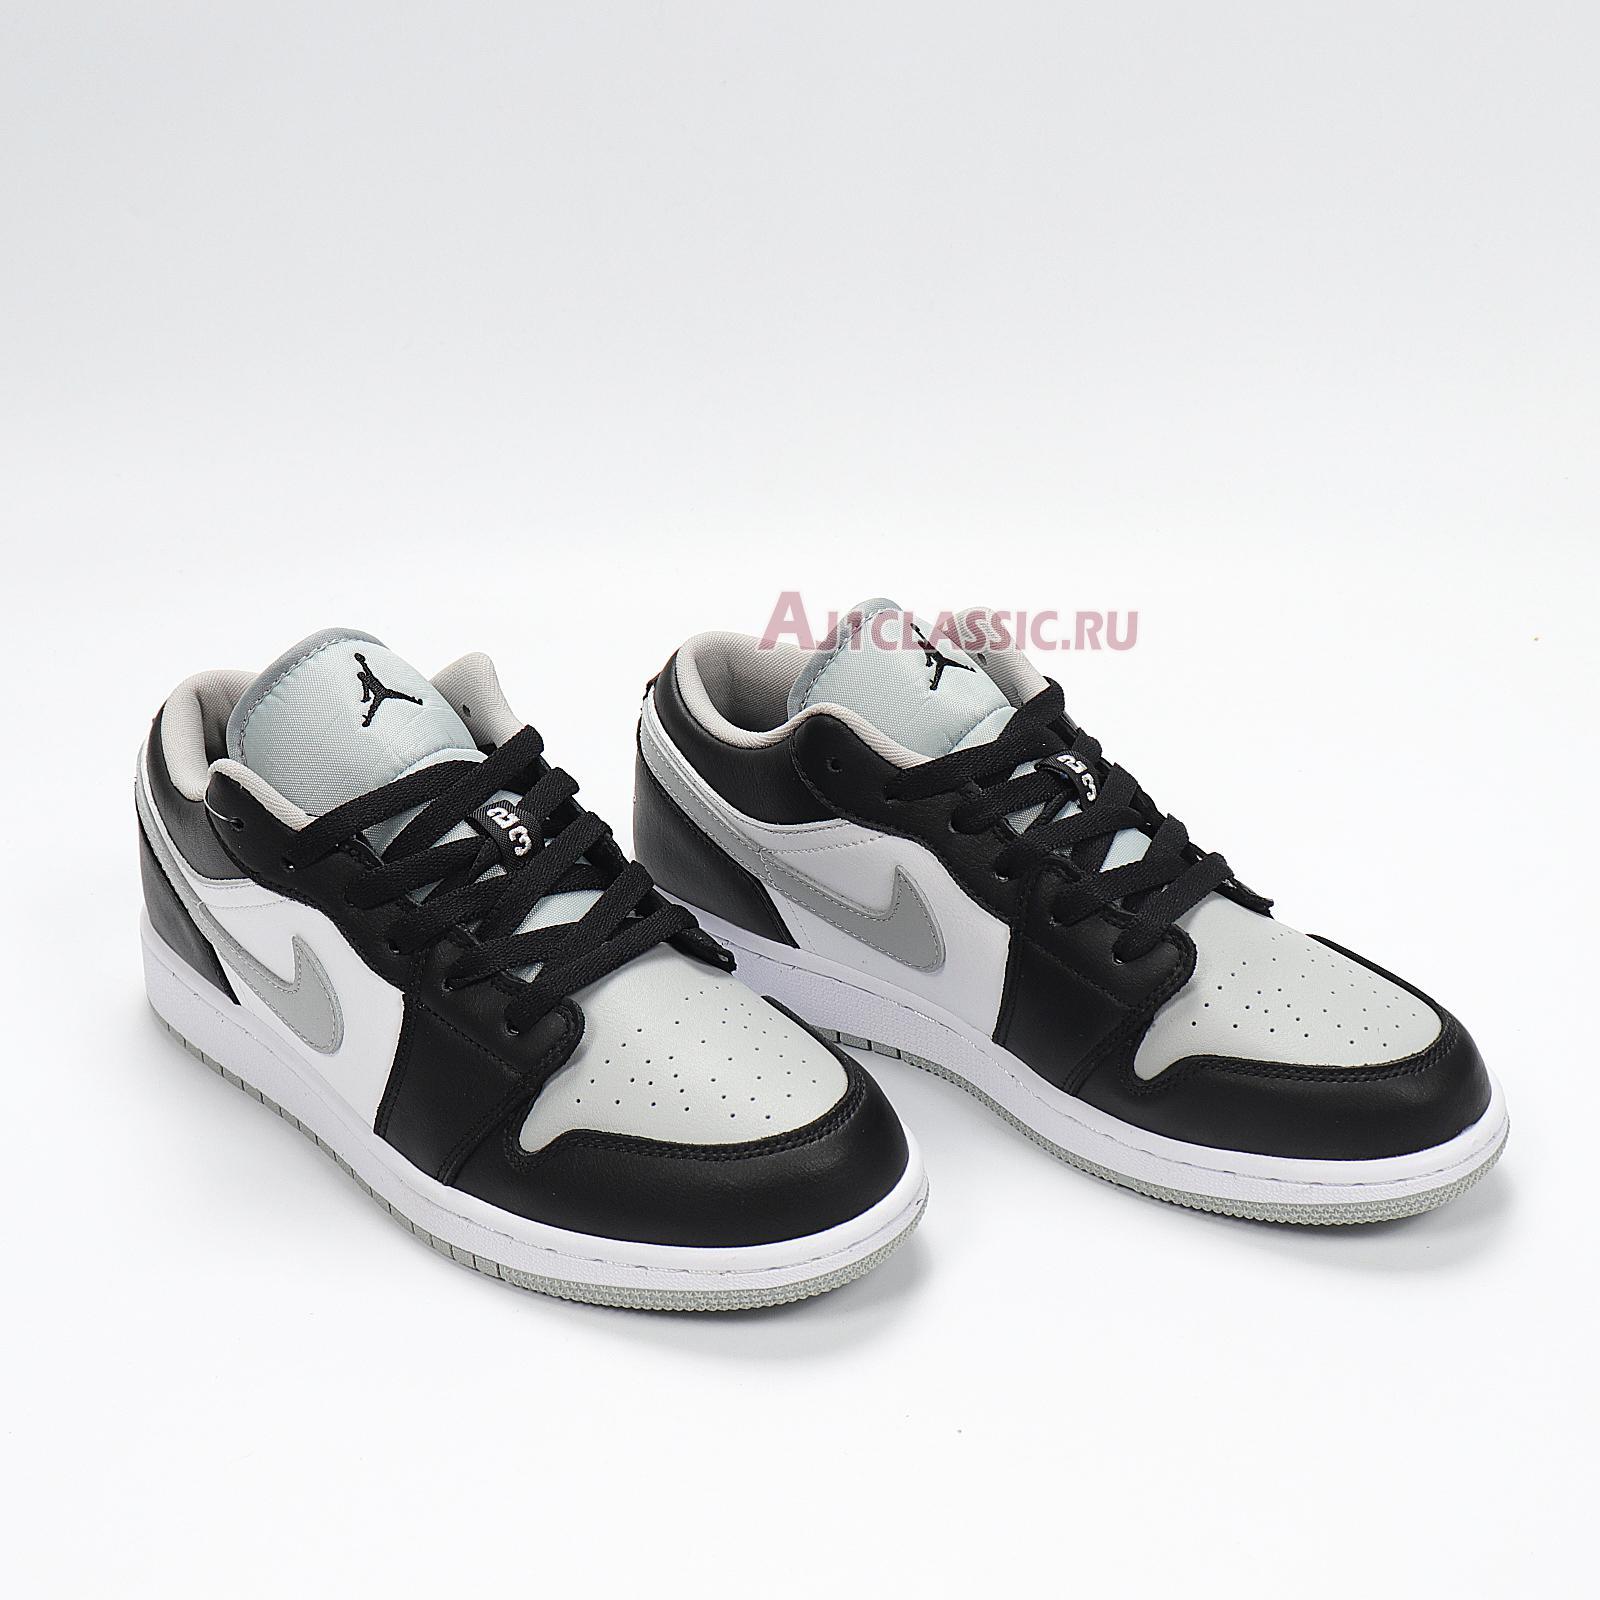 Air Jordan 1 Low "Smoke Grey" 553558-039